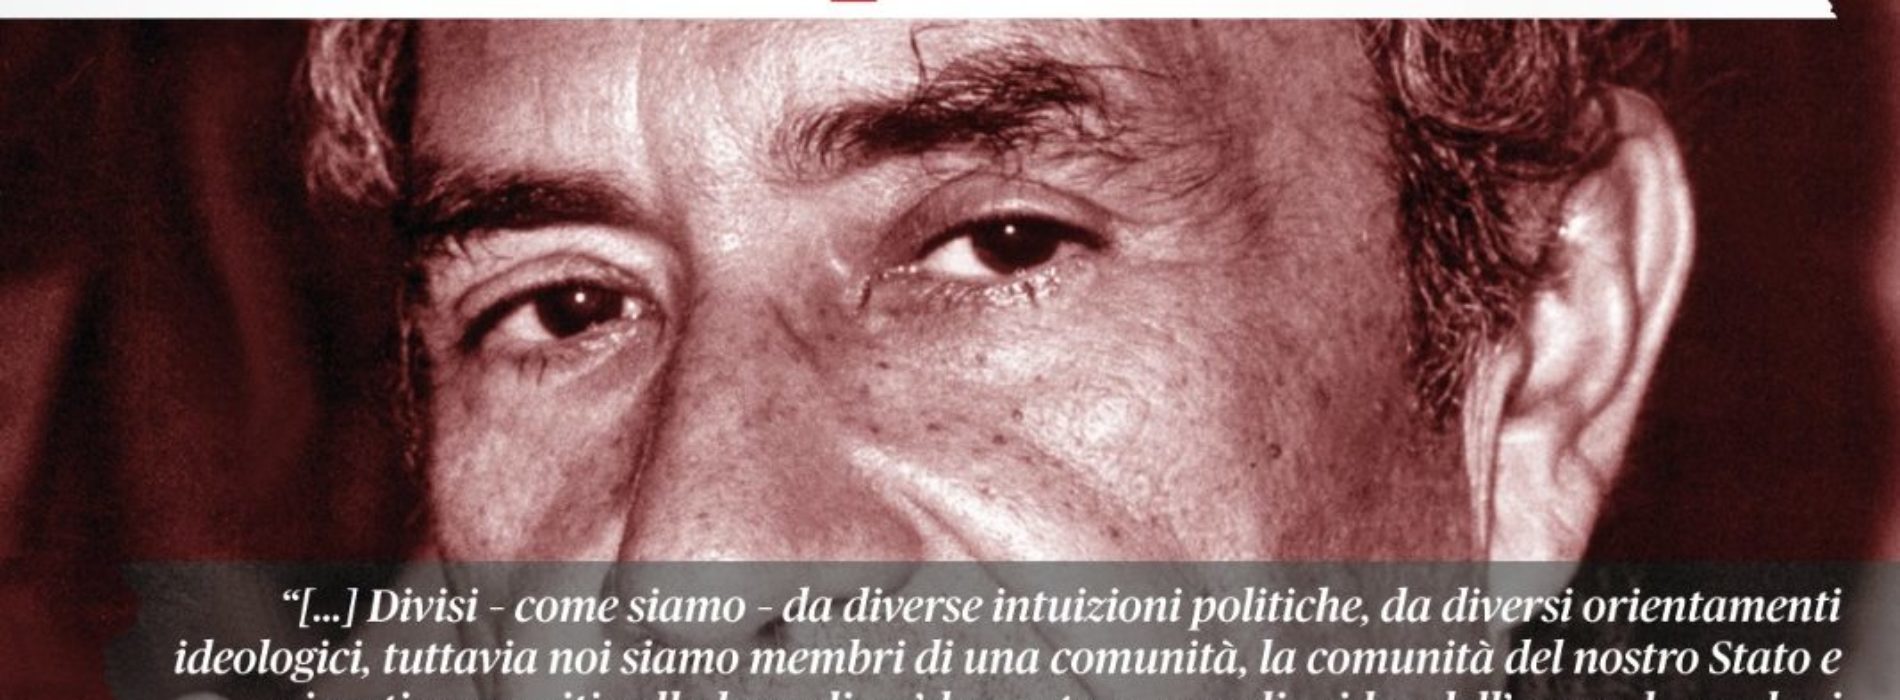 L’eredità di Aldo Moro, il digital talk di Comunità Solidale Aversa